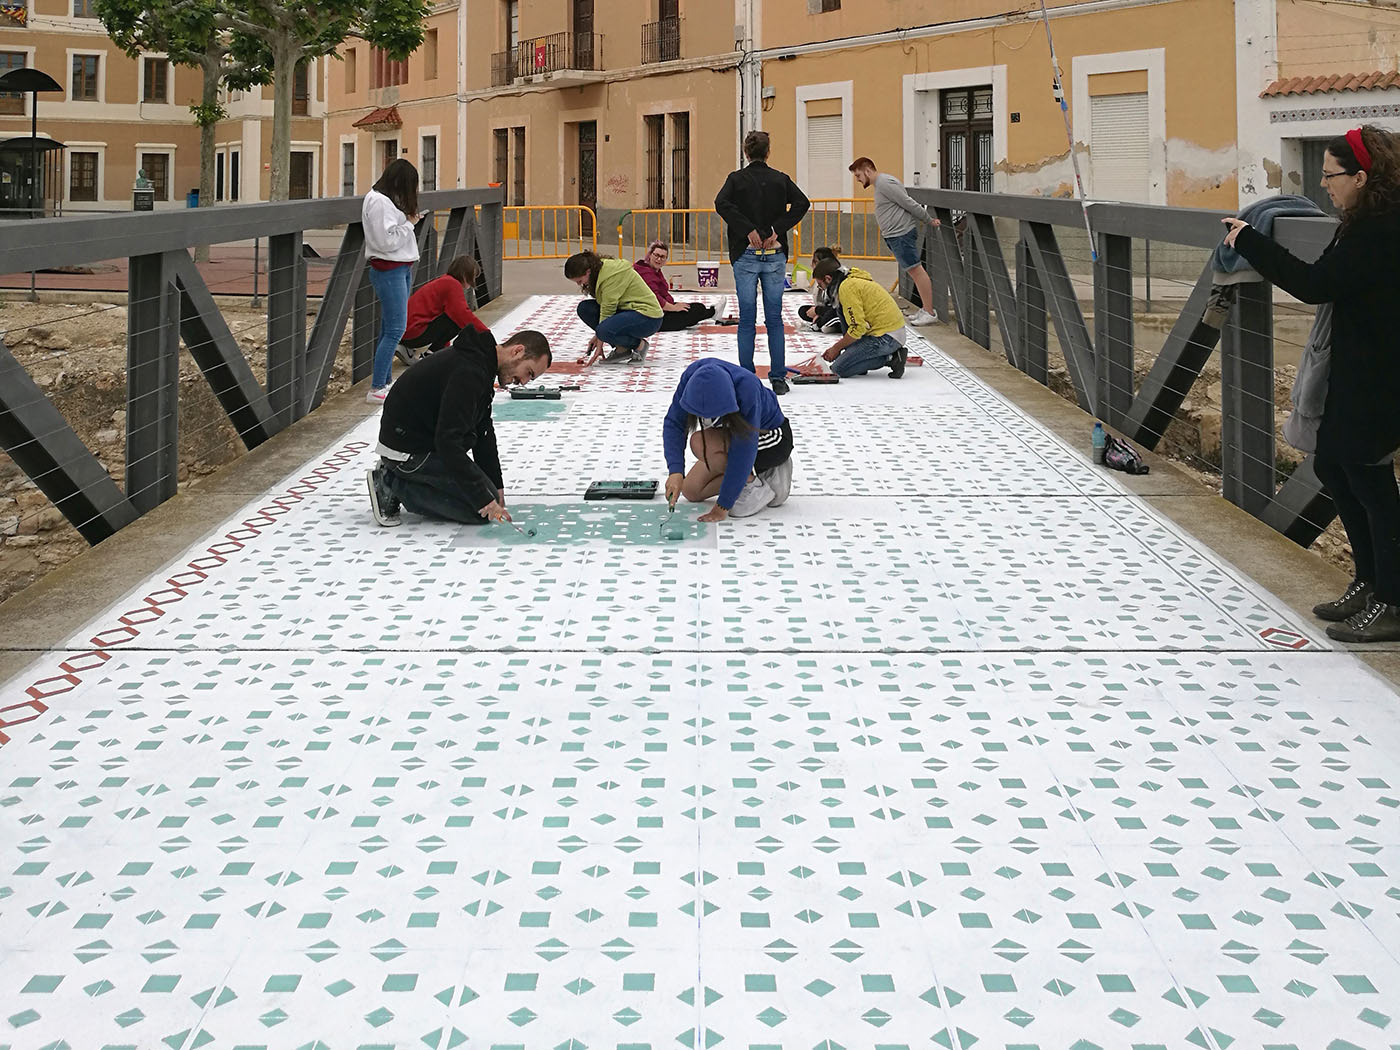 FLOOR tiles tile pattern pattern hidraulic floors project javier de riba Workshop public